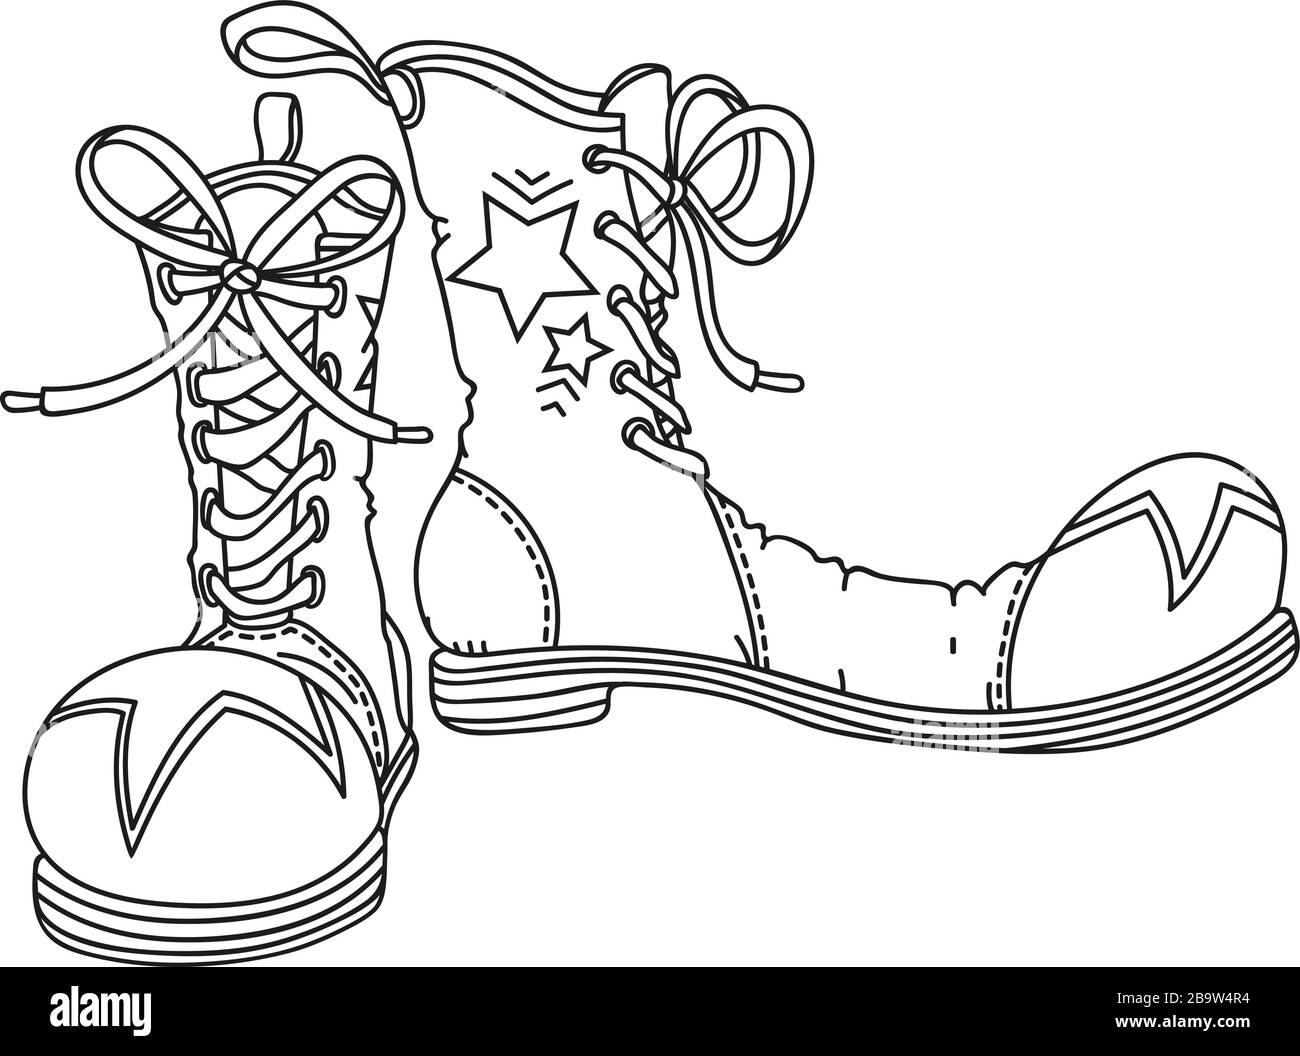 Chaussures de clown, illustration vectorielle dessinée à la main Illustration de Vecteur